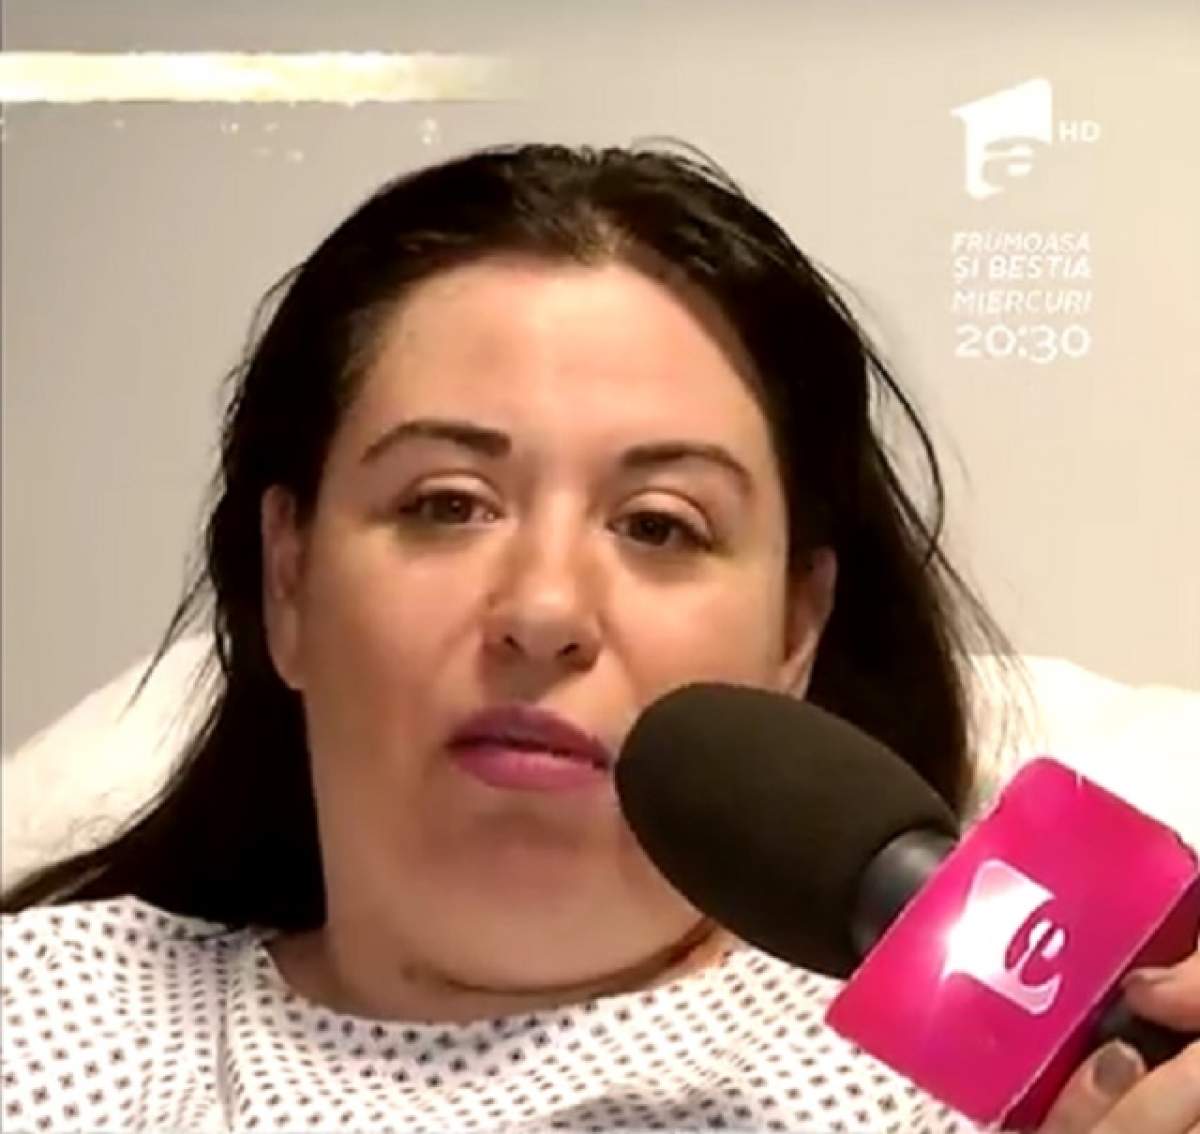 VIDEO / Oana Roman, interviu de pe patul de spital: "De sâmbătă seară tot fac analize"